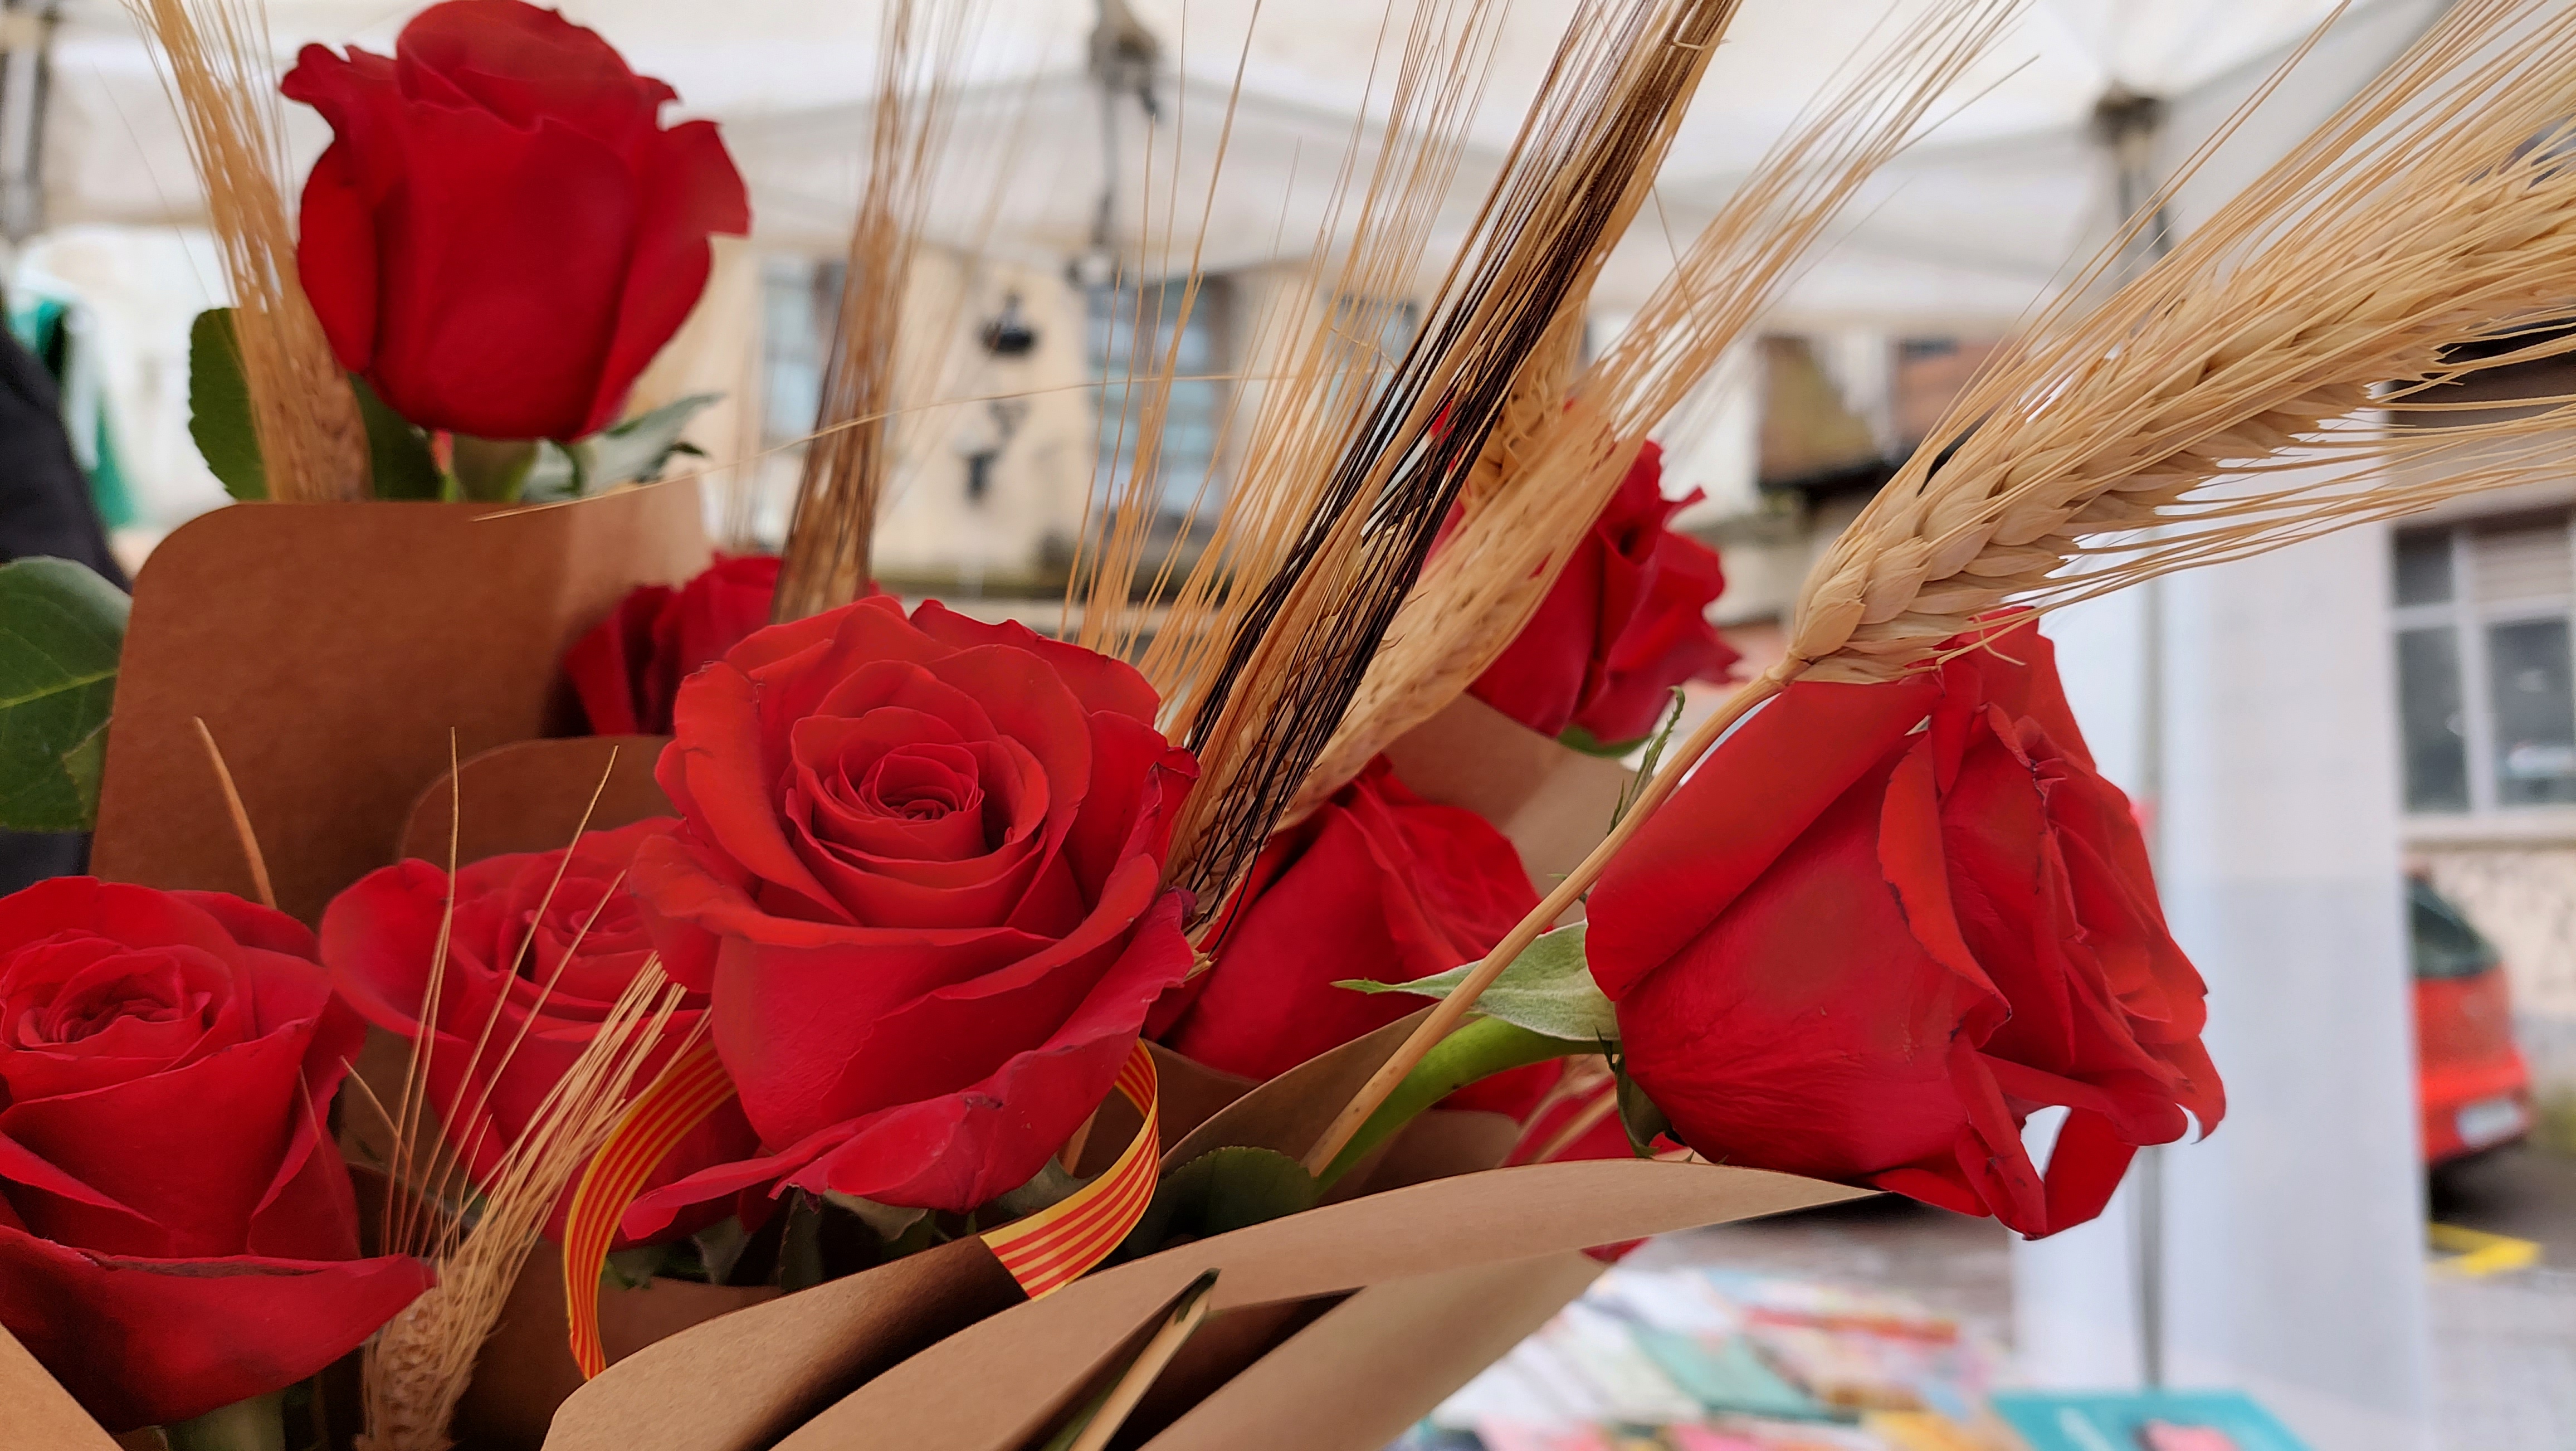 Parada de roses durant la diada de Sant Jordi de 2022 a Berga